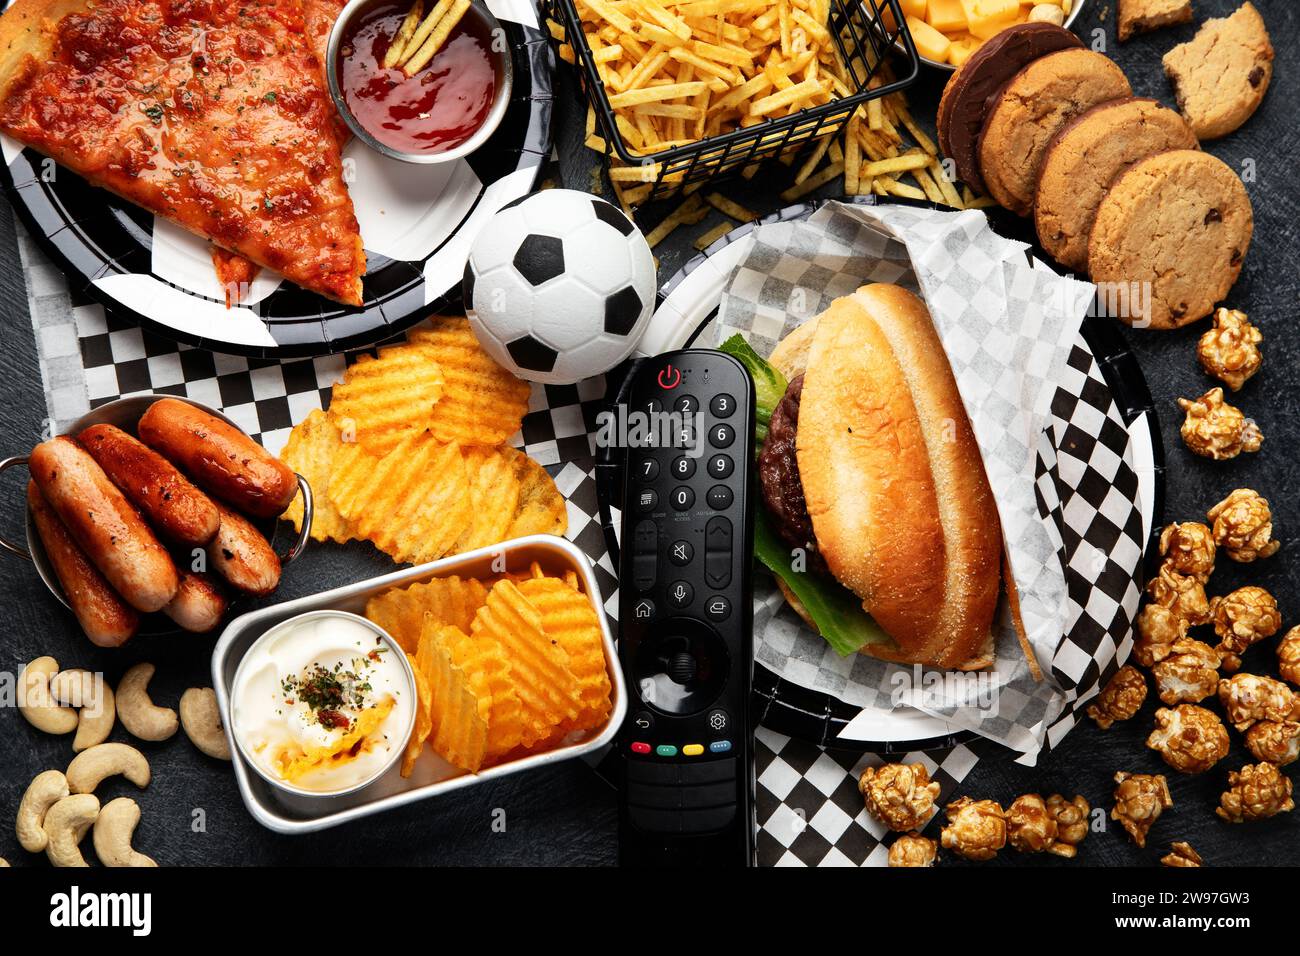 Gesättigte Fette. Fußballzeit. TV-Fernbedienung und Snacks - Chips, Popcorn, Kekse, Käse, Soße, Pommes, Burger, Nüsse. Draufsicht Stockfoto